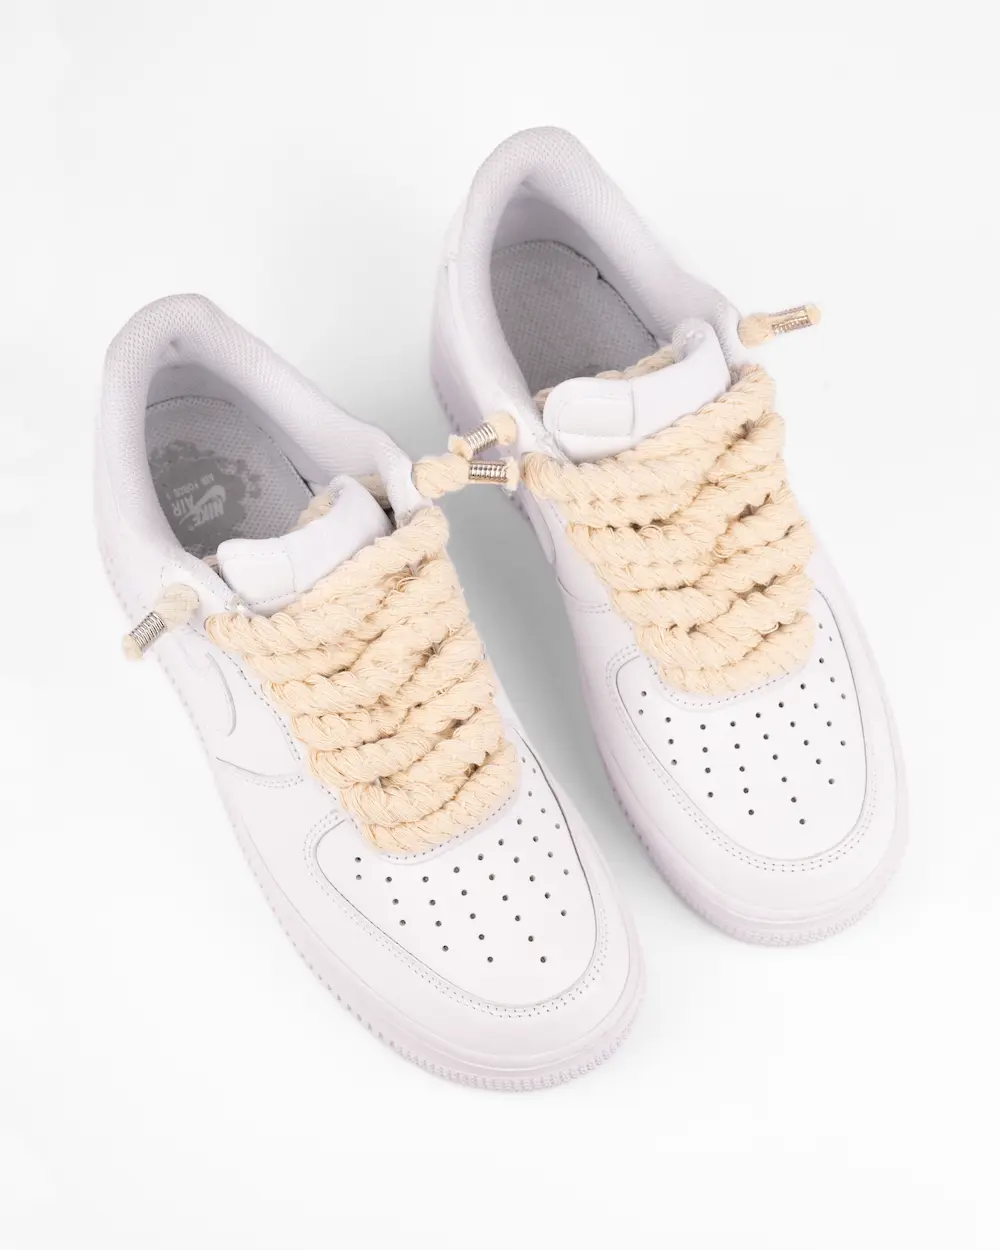 Nike Air Force 1 bianca personalizzata con lacci in corda beige